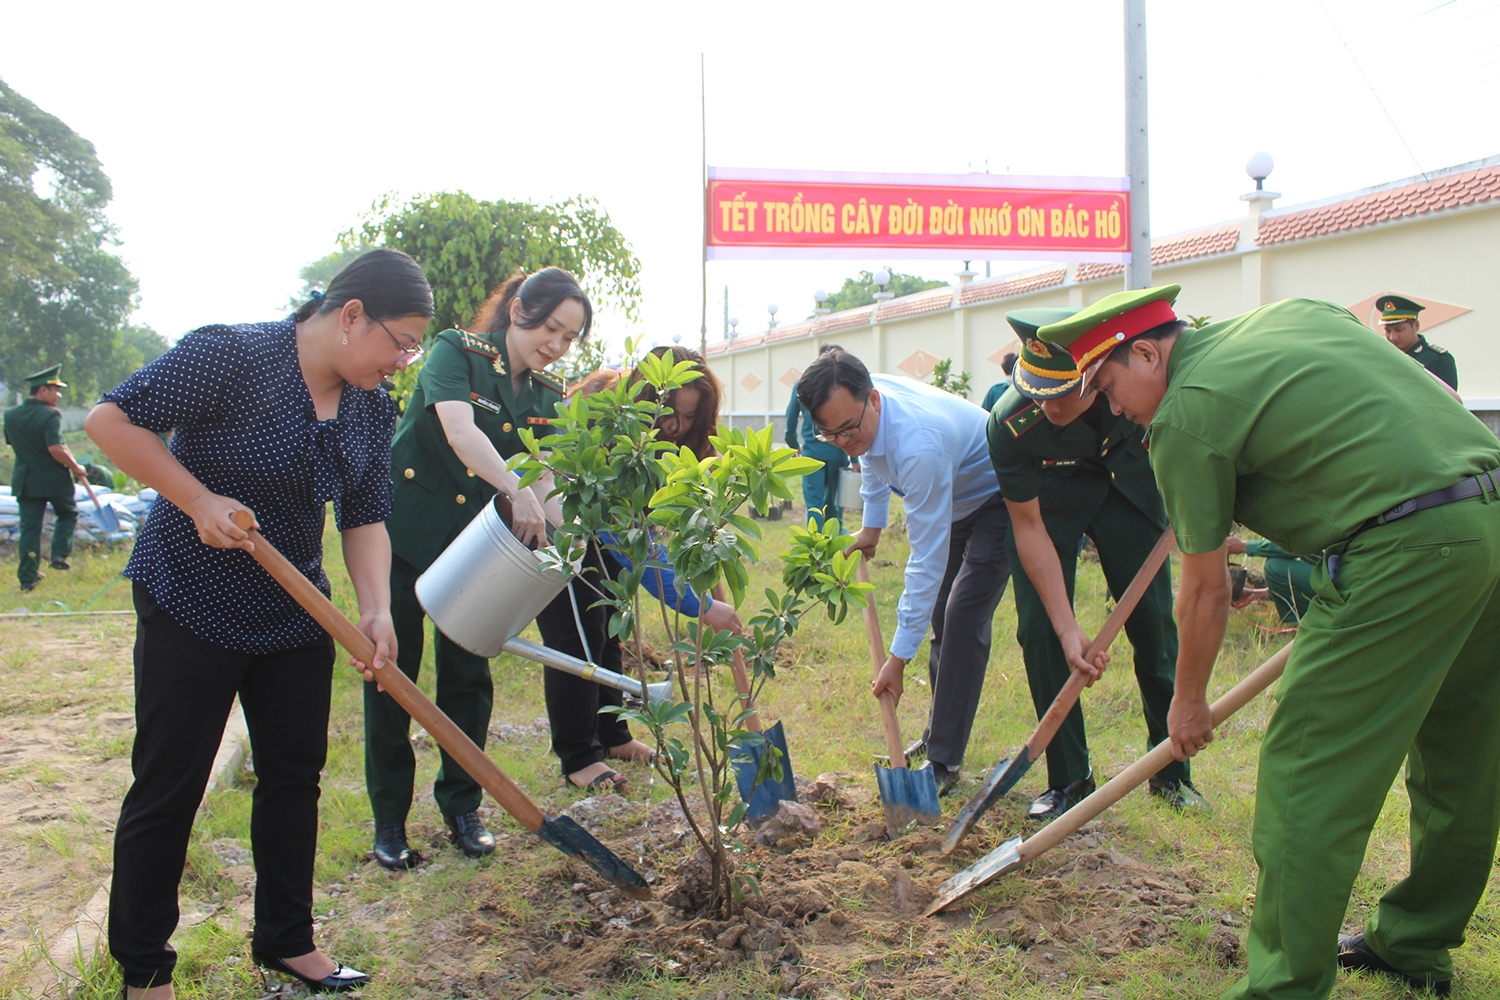 Đồng loạt các đơn vị trực thuộc BĐBP tỉnh Kiên Giang ra quân trồng cây